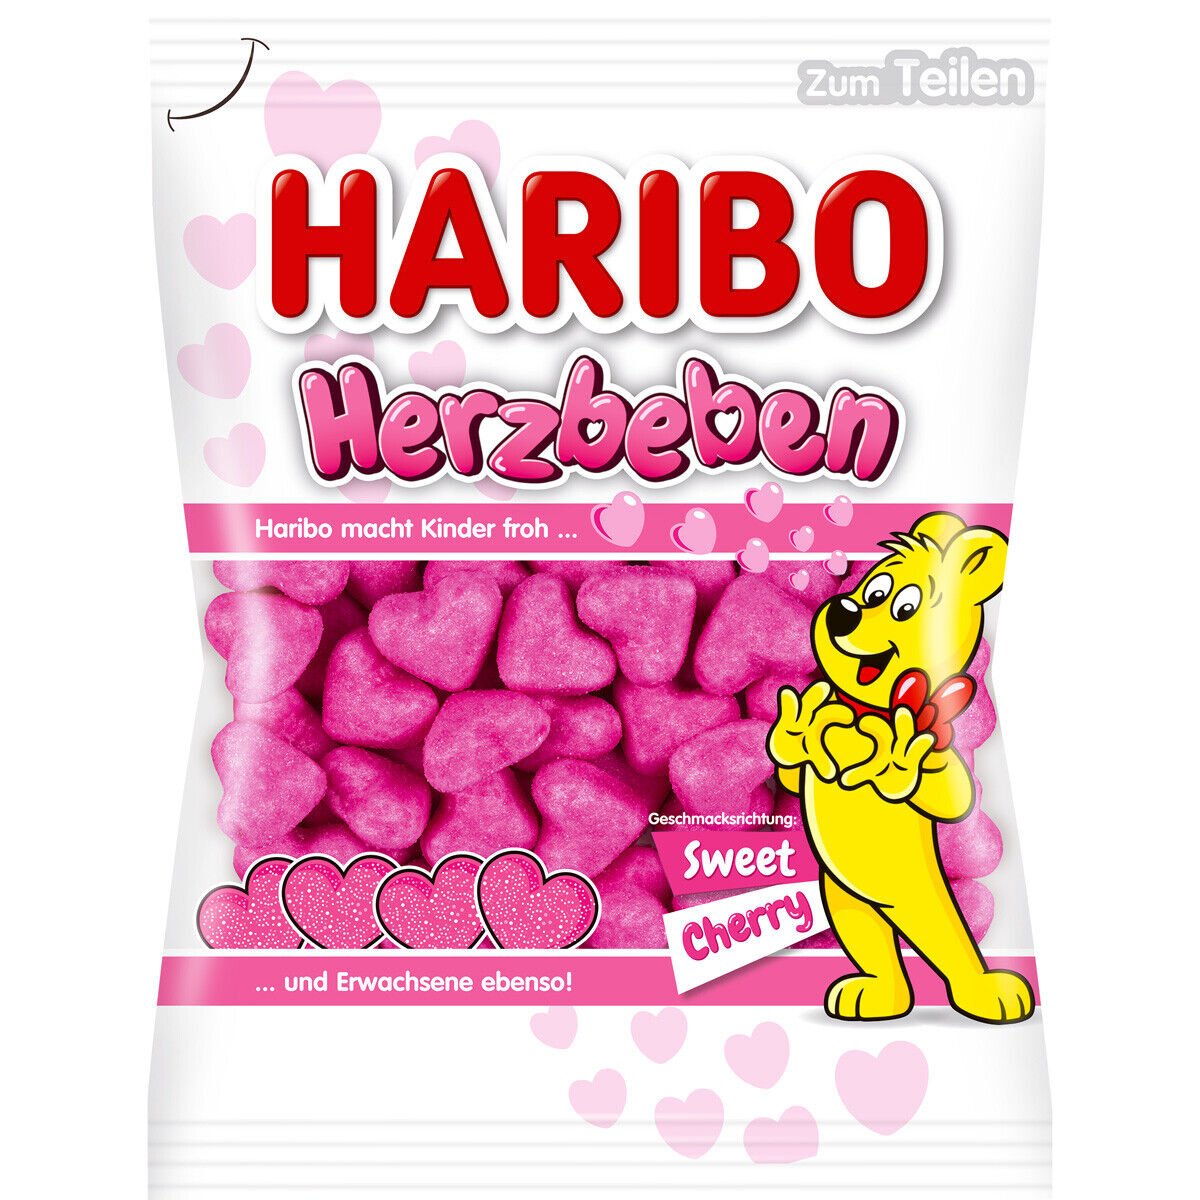 Haribo Herzbeben Sweet Cherry 160g - Candy Mail UK